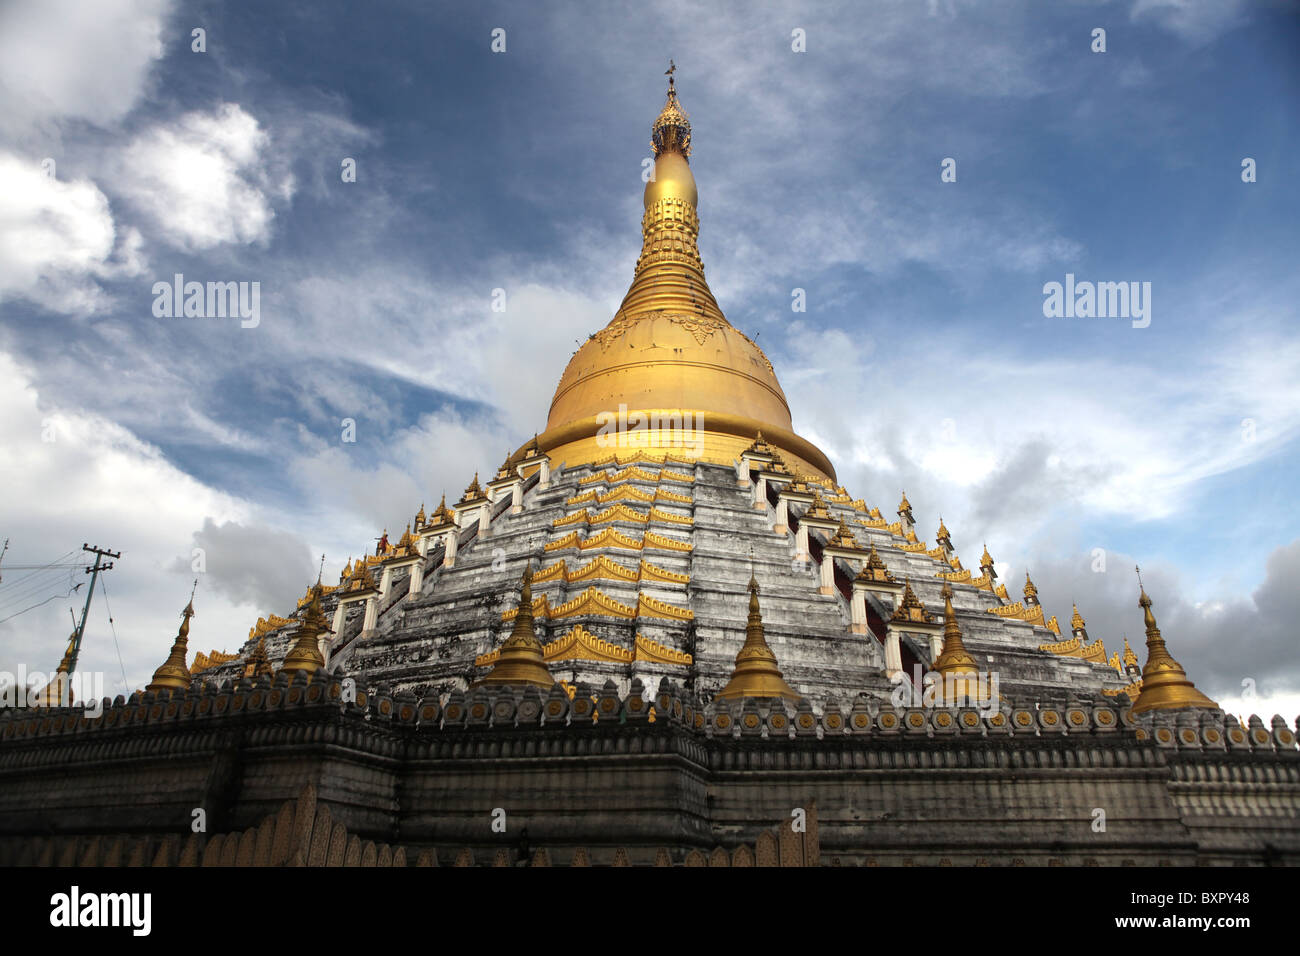 The Mahazedi Paya temple in Bago, Myanmar or Burma in Asia Stock Photo